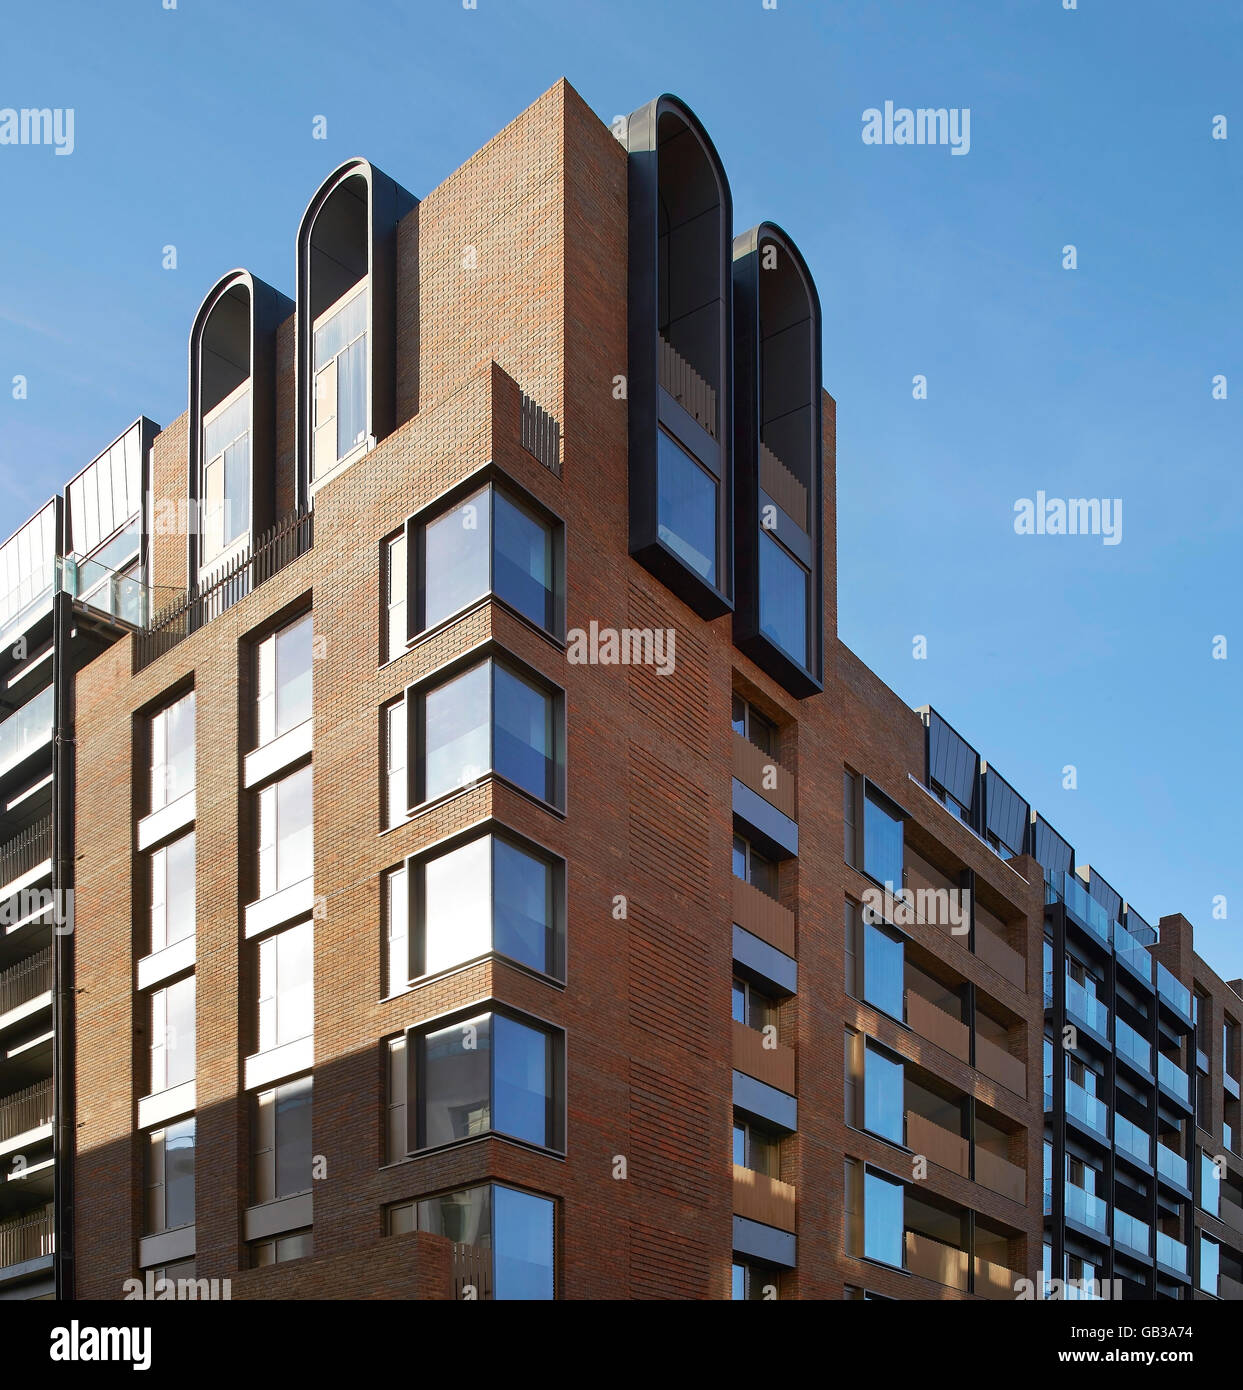 L'altitude d'angle en brique rouge bloc résidentiel vêtu. Fitzroy, London, Royaume-Uni. Architecte : Lifschutz Davidson Sandilands, 2015. Banque D'Images